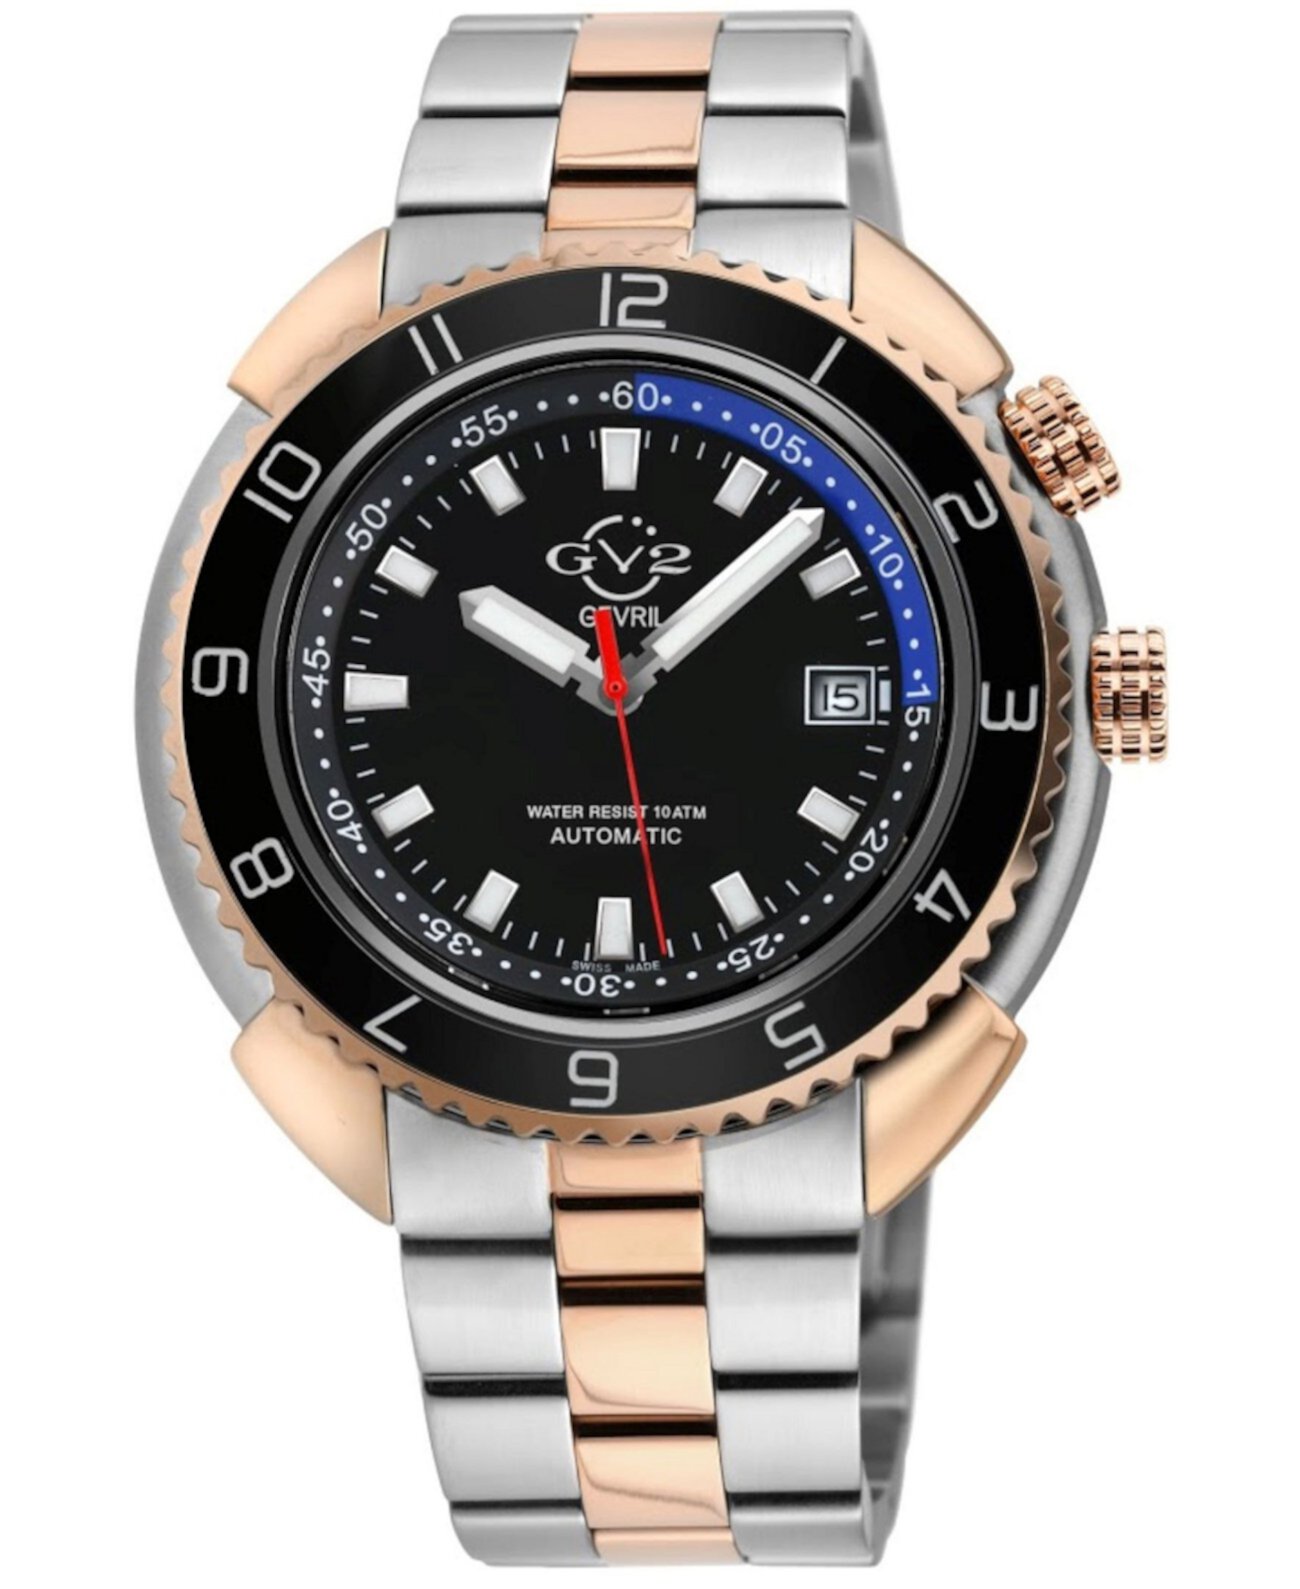 Мужские швейцарские часы с автоматическим браслетом Squalo с двухцветным покрытием из нержавеющей стали и ионным покрытием GV2, 46 мм Gevril